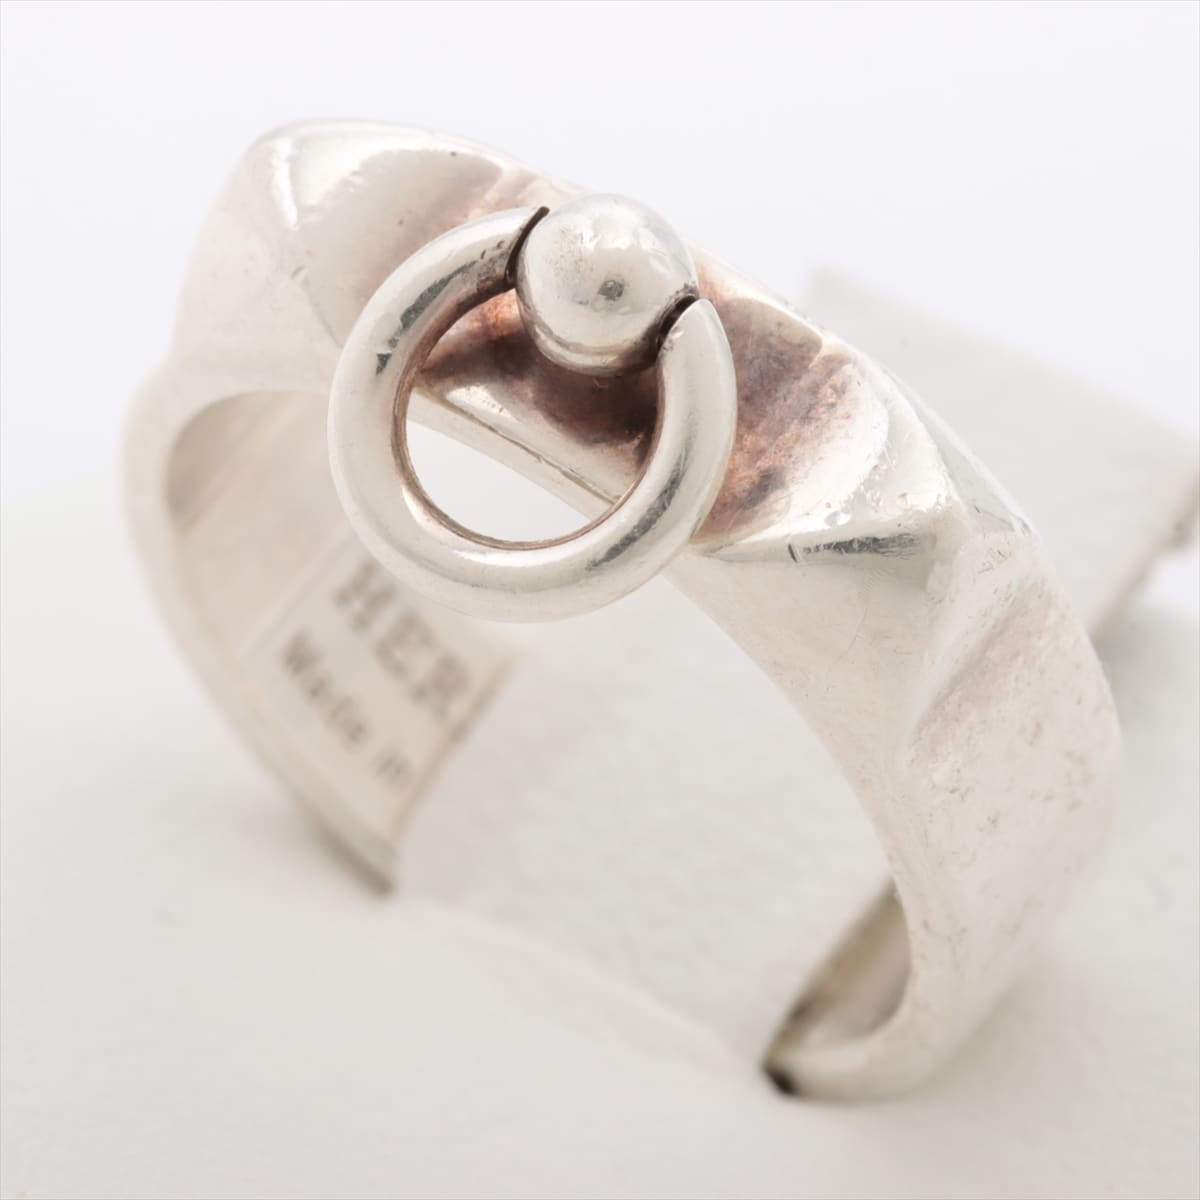 Hermès Collier de Chien rings 925 4.3g Silver